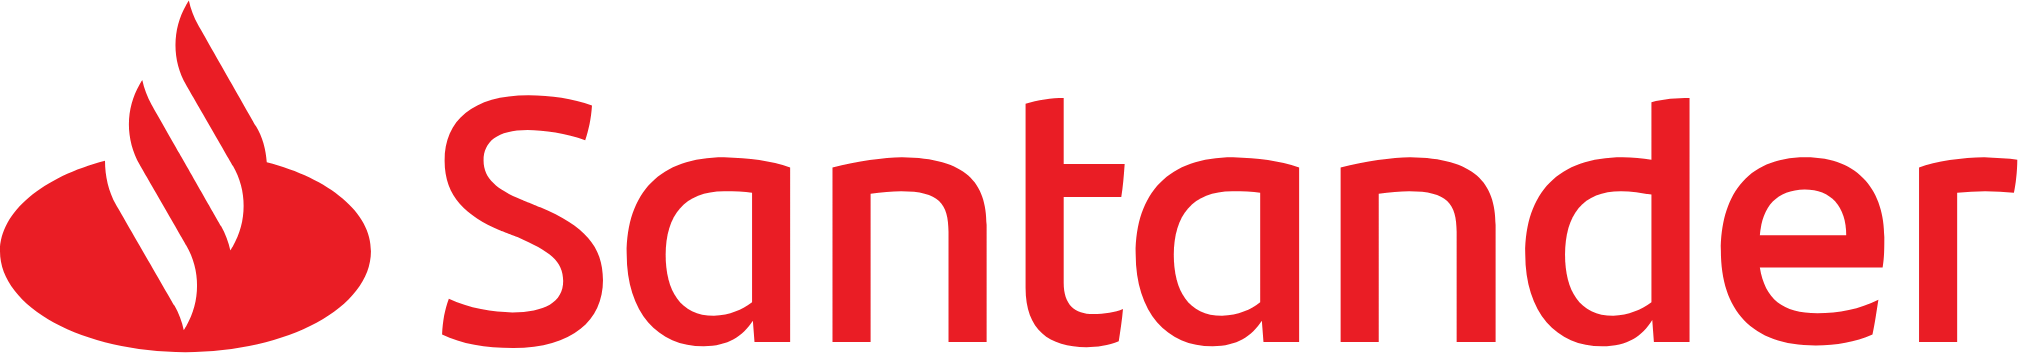 Santander Polska logo large (transparent PNG)